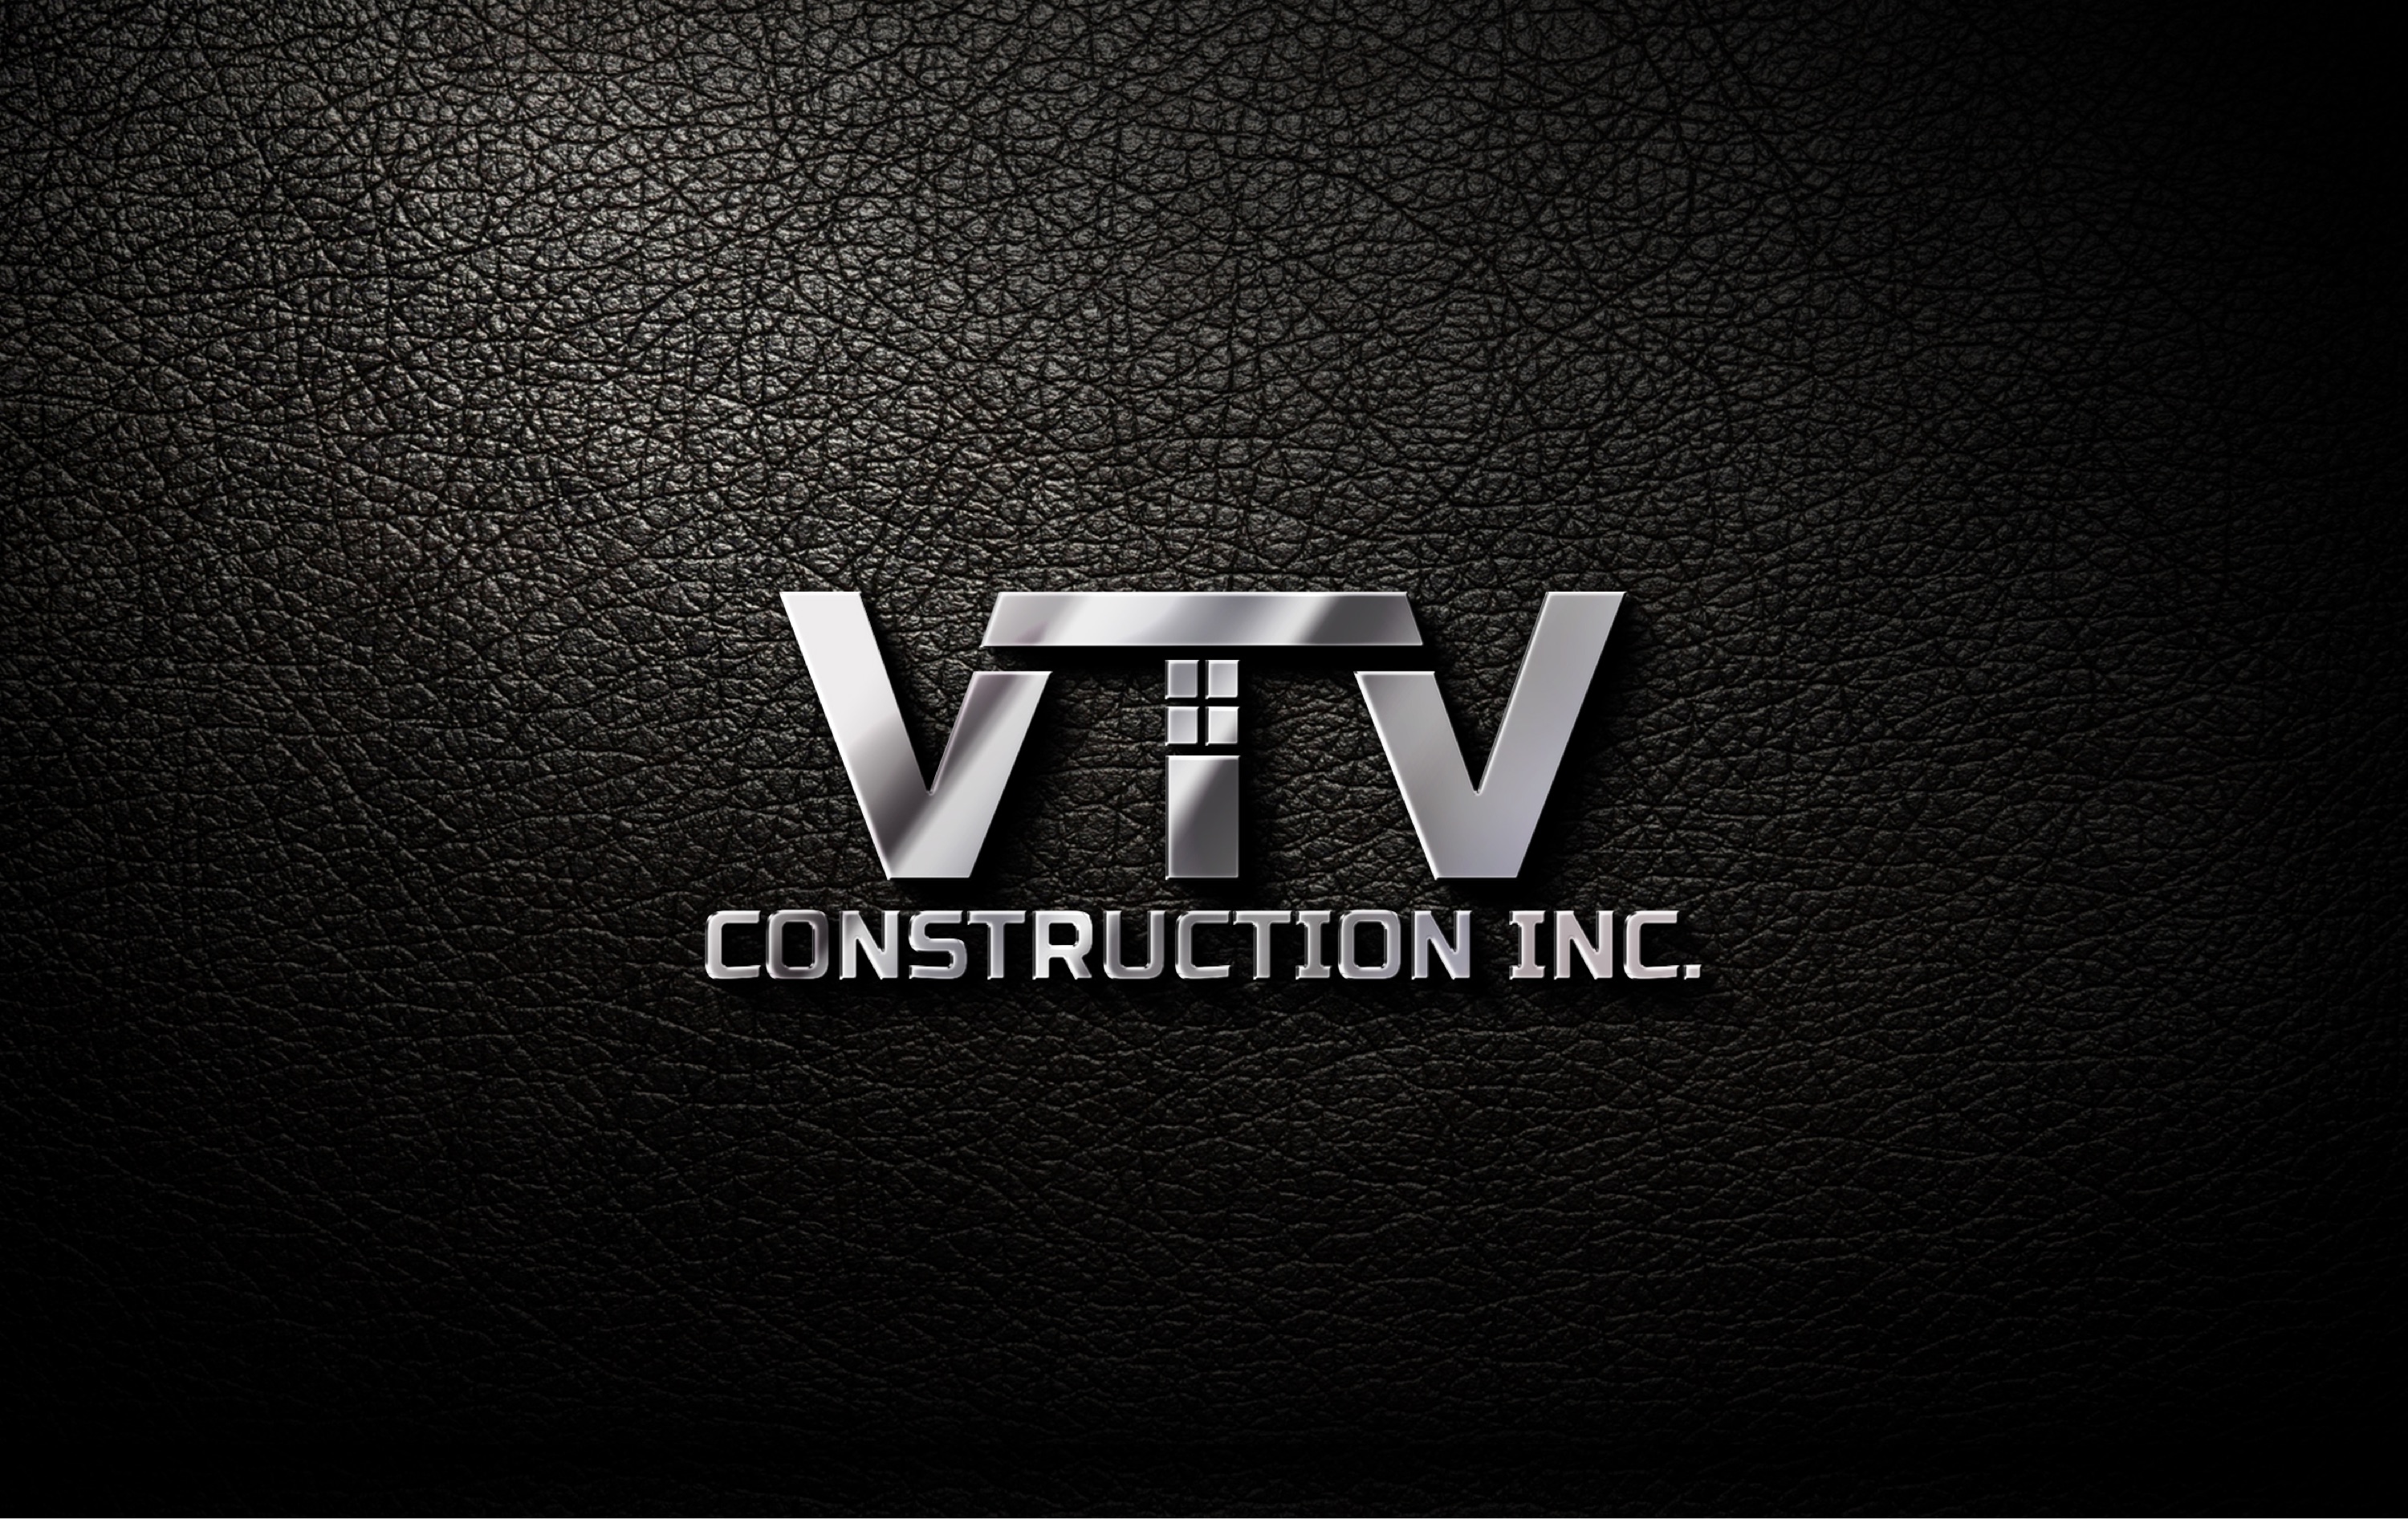 VTV Construction, Inc. Logo